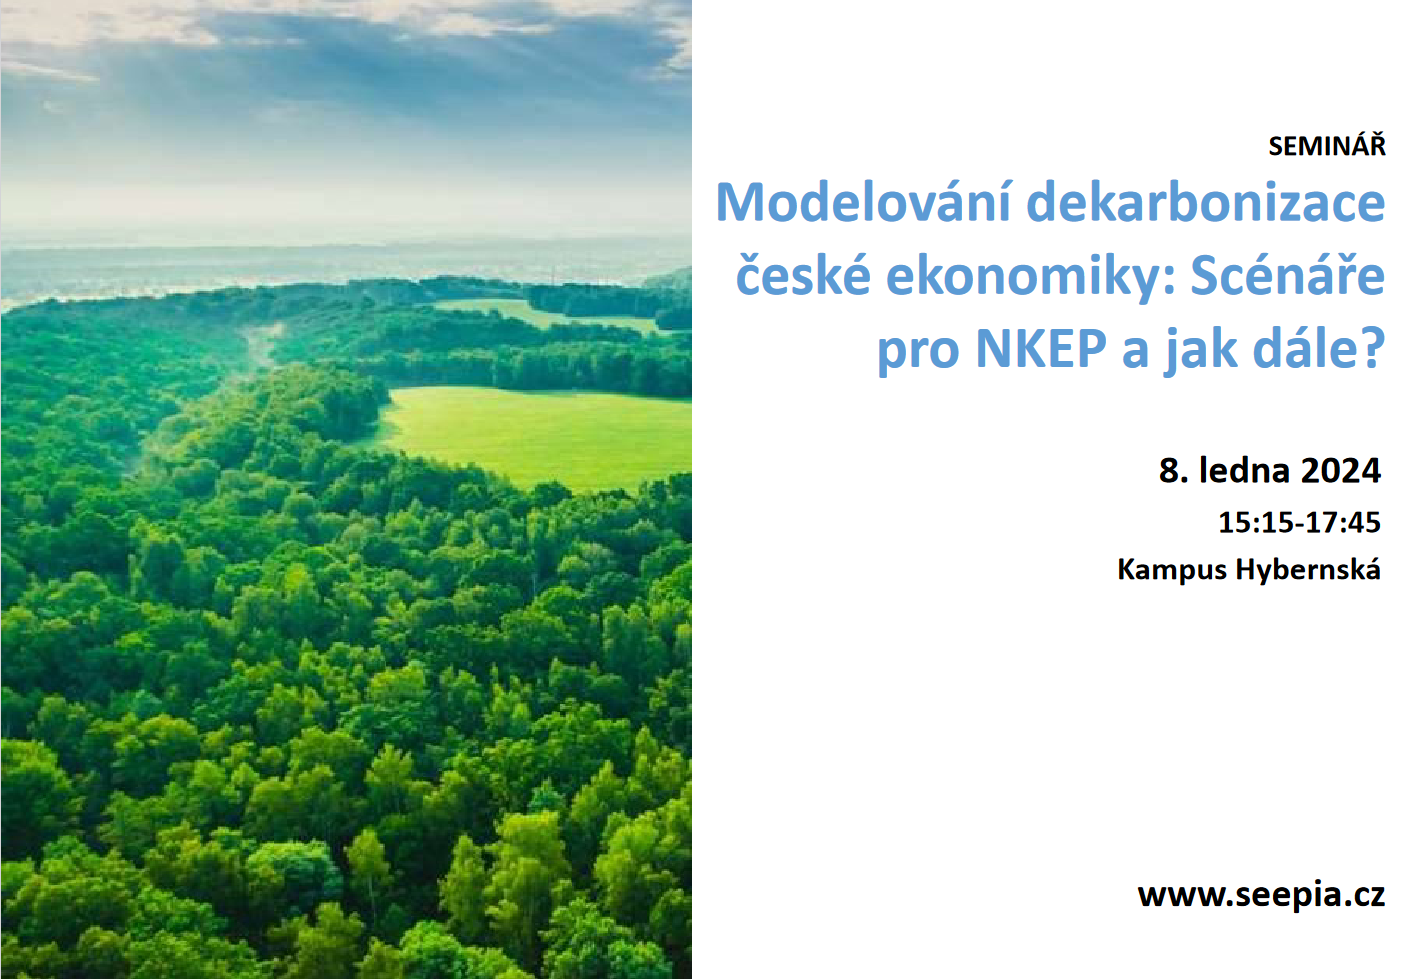 Zveme vás na seminář Modelování dekarbonizace české ekonomiky: Scénáře pro NKEP a jak dále?